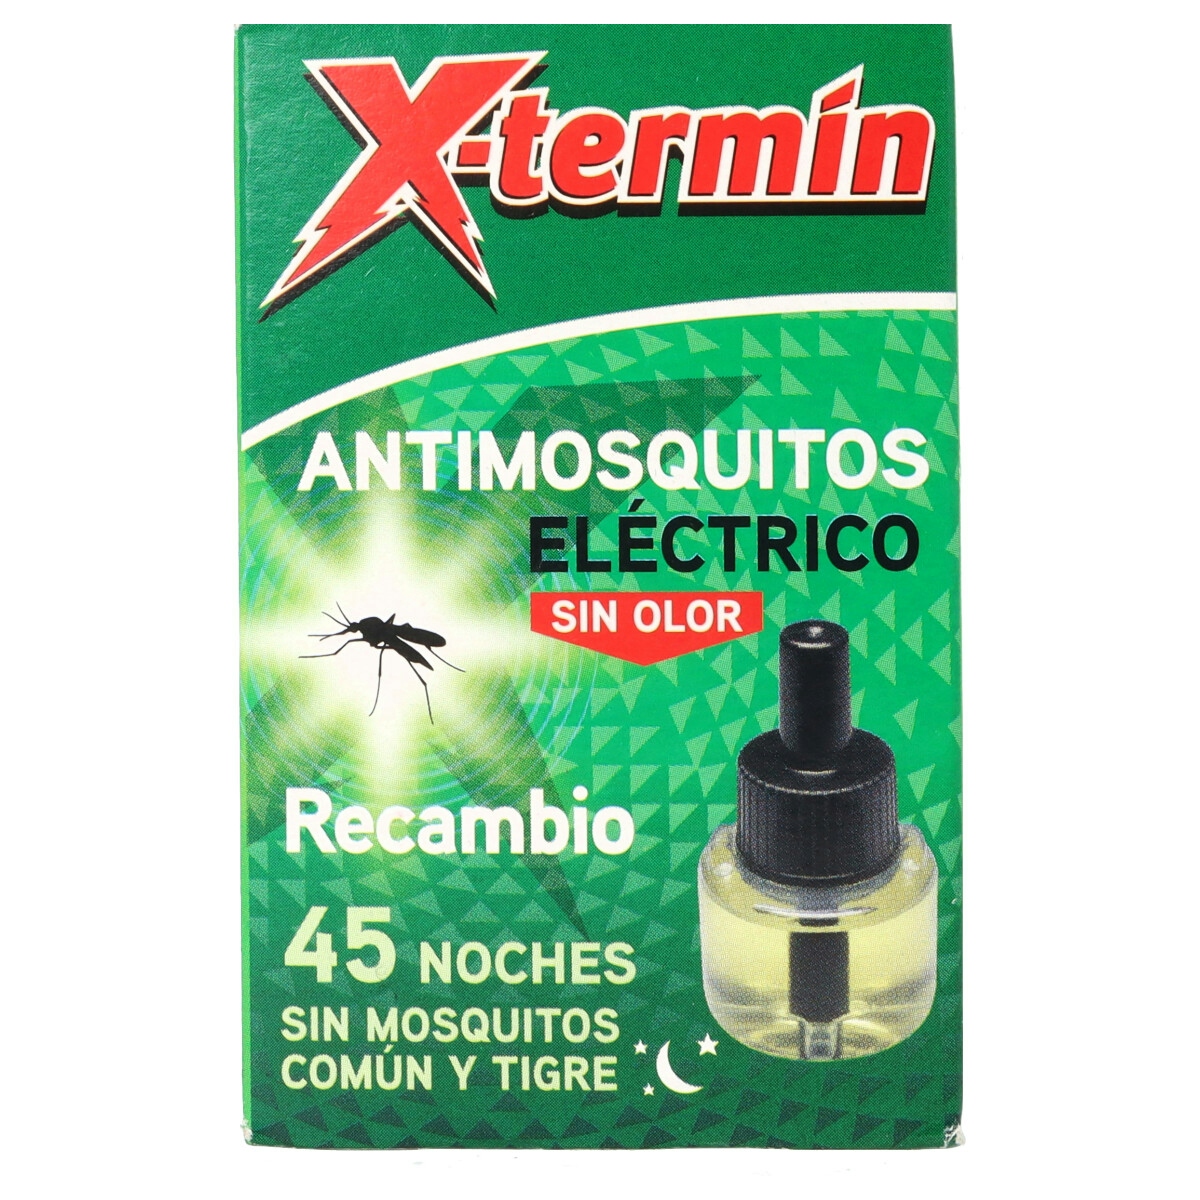 Insecticida eléctrico antimosquitos XTERMIN recambio 1 ud.